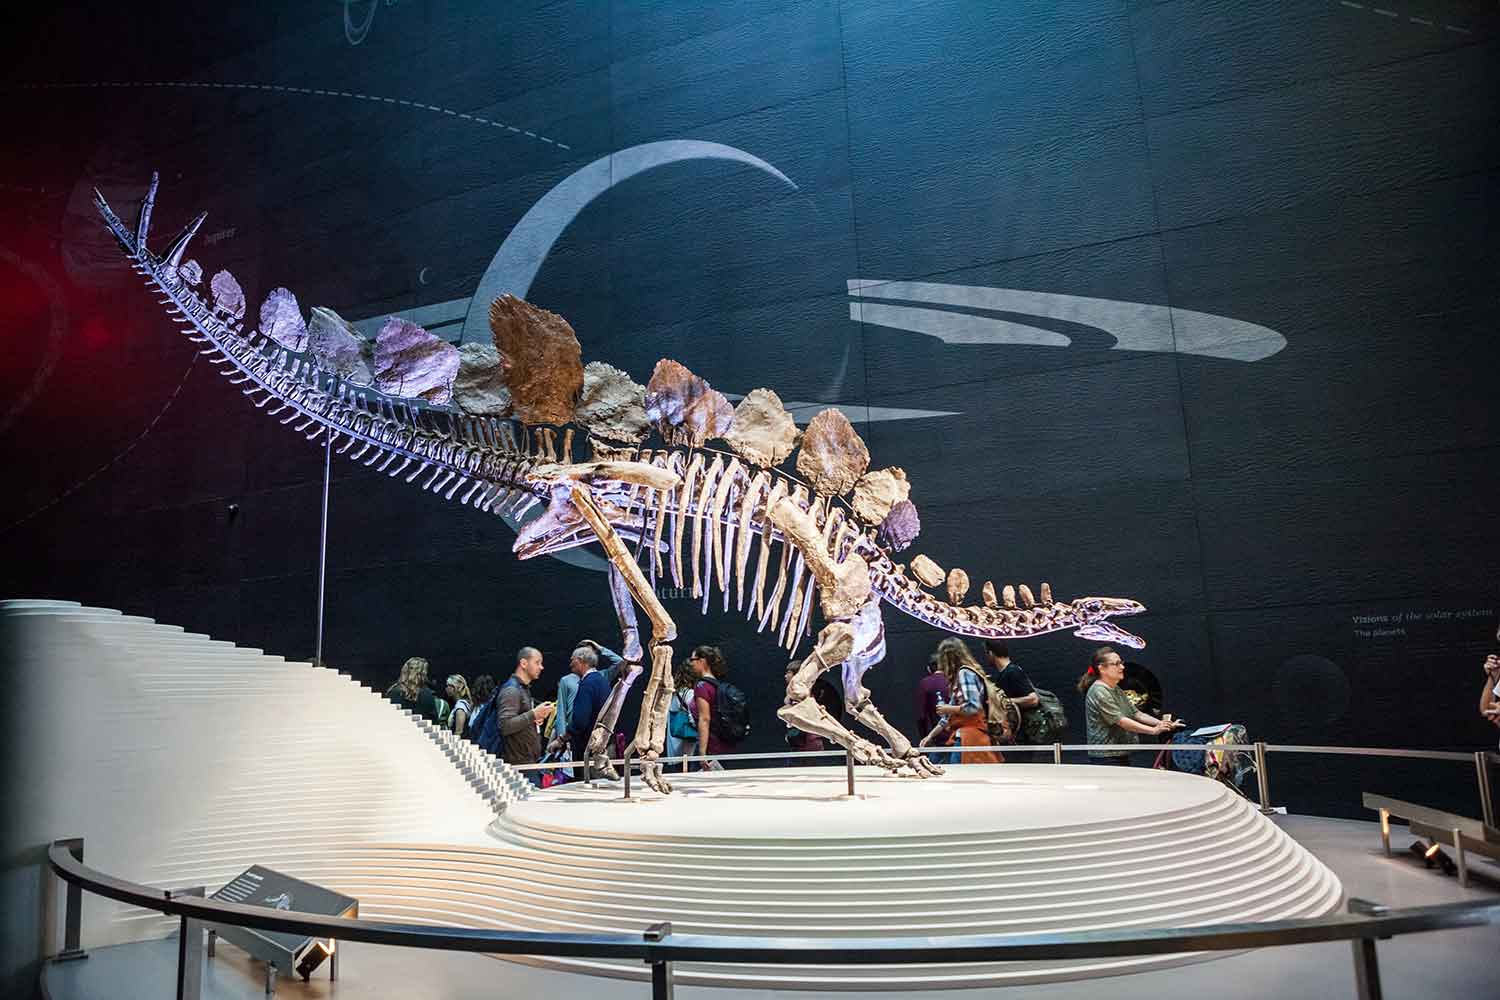 Stegosaurus skeleton on display